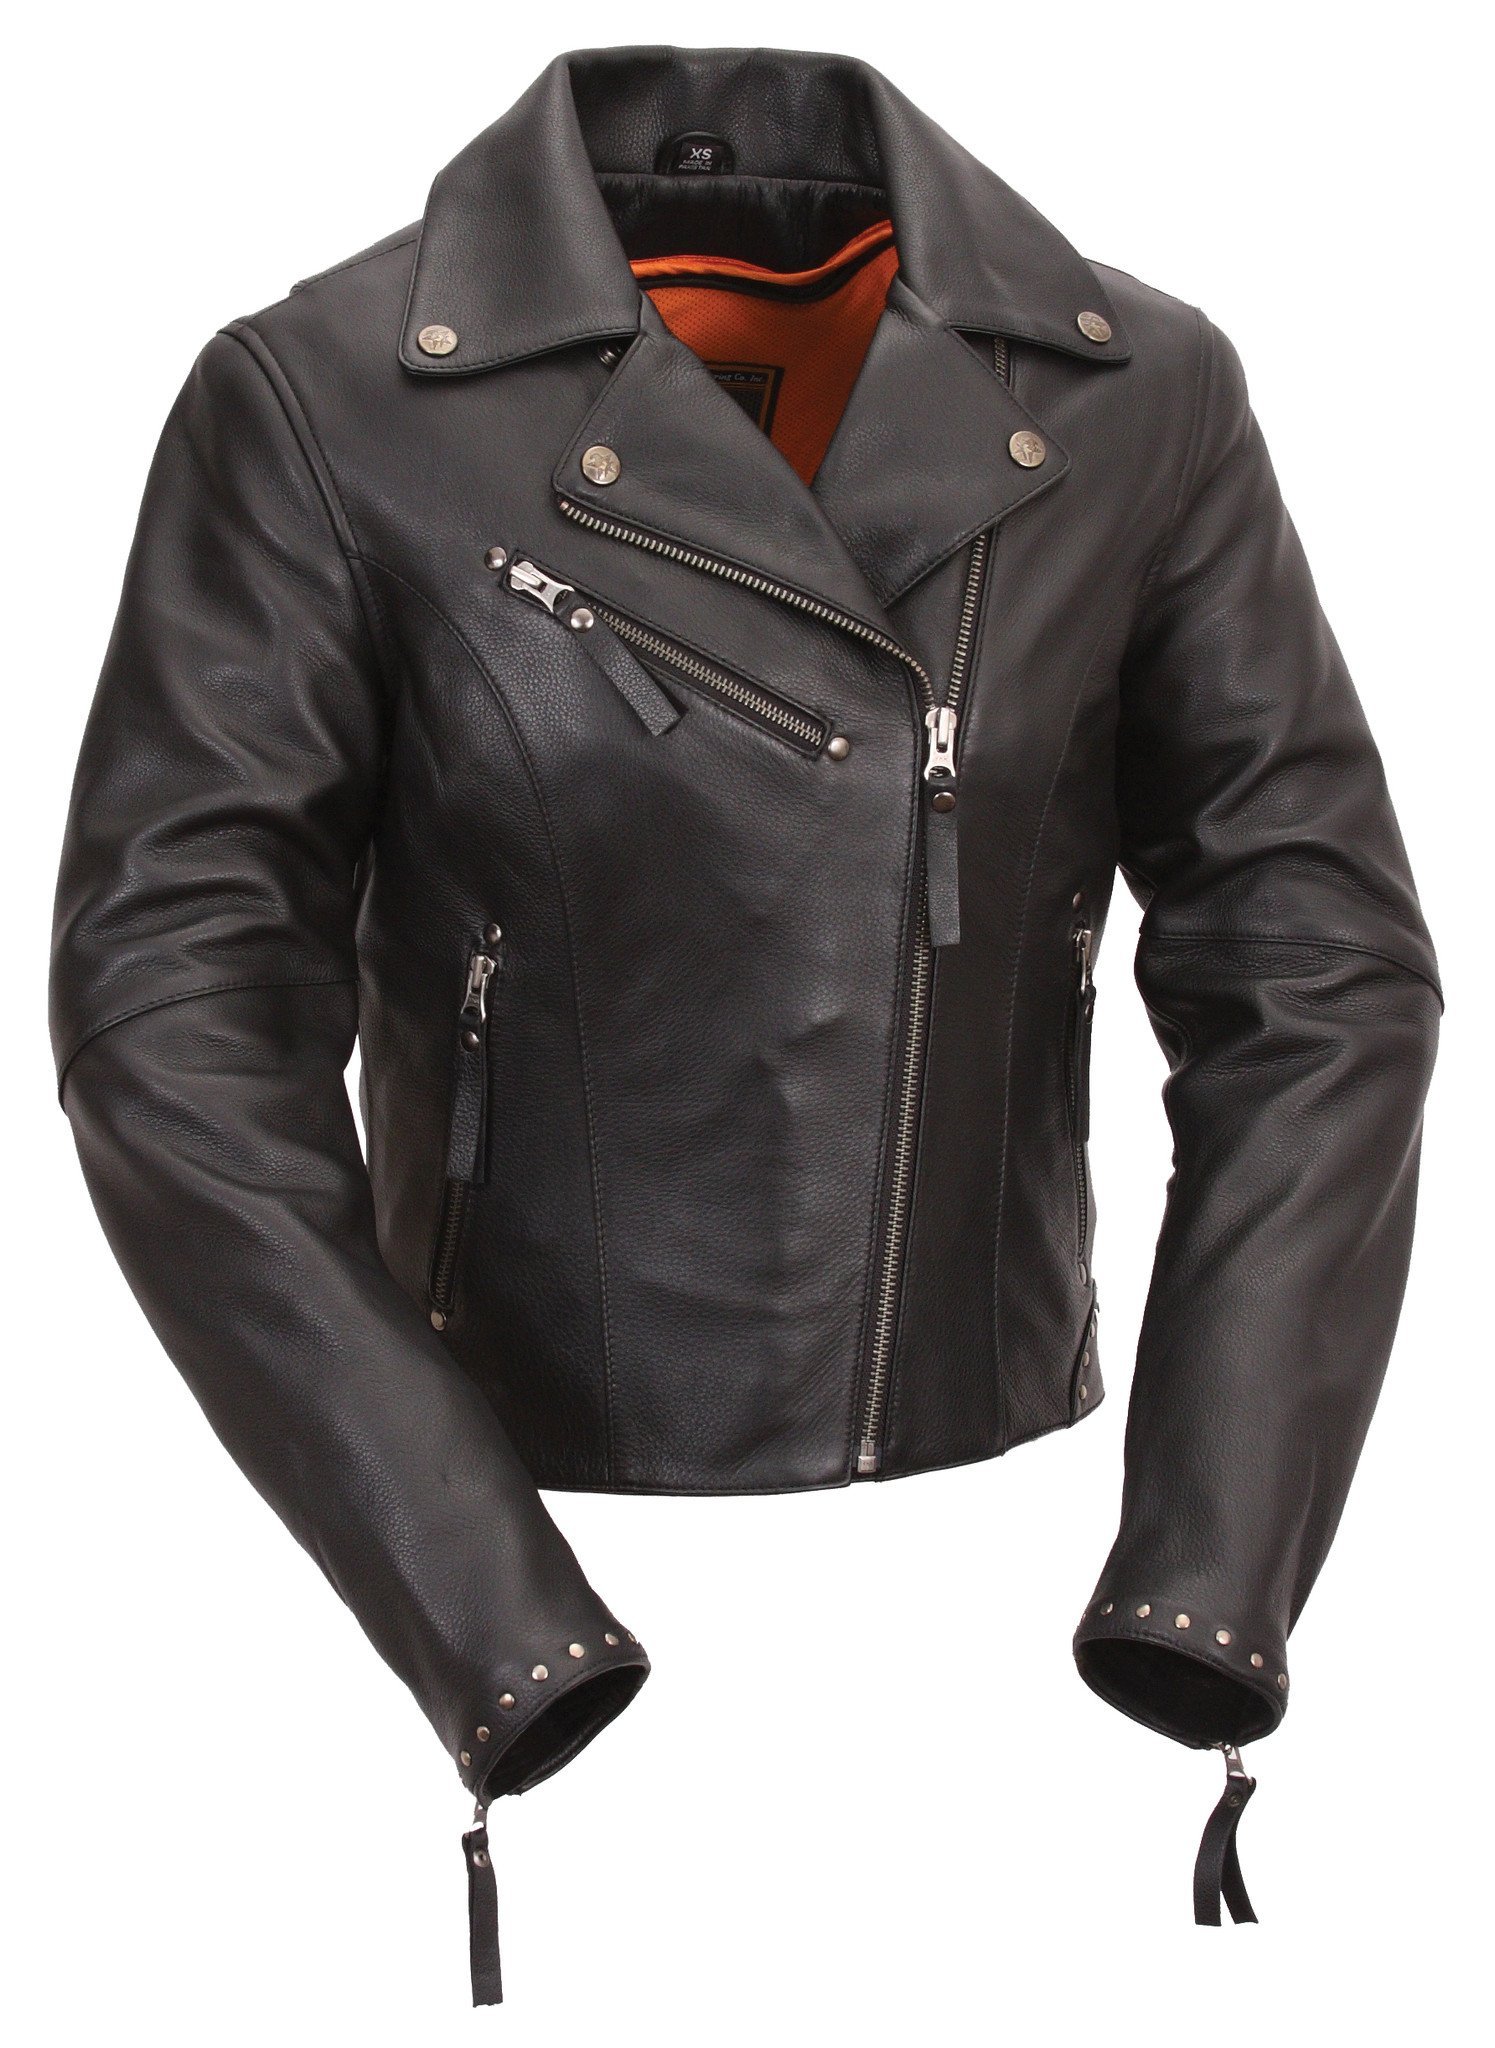 Scarlett Star - Women's Motorcycle Leather Jacket - SKU FIL159NOCZ-FM